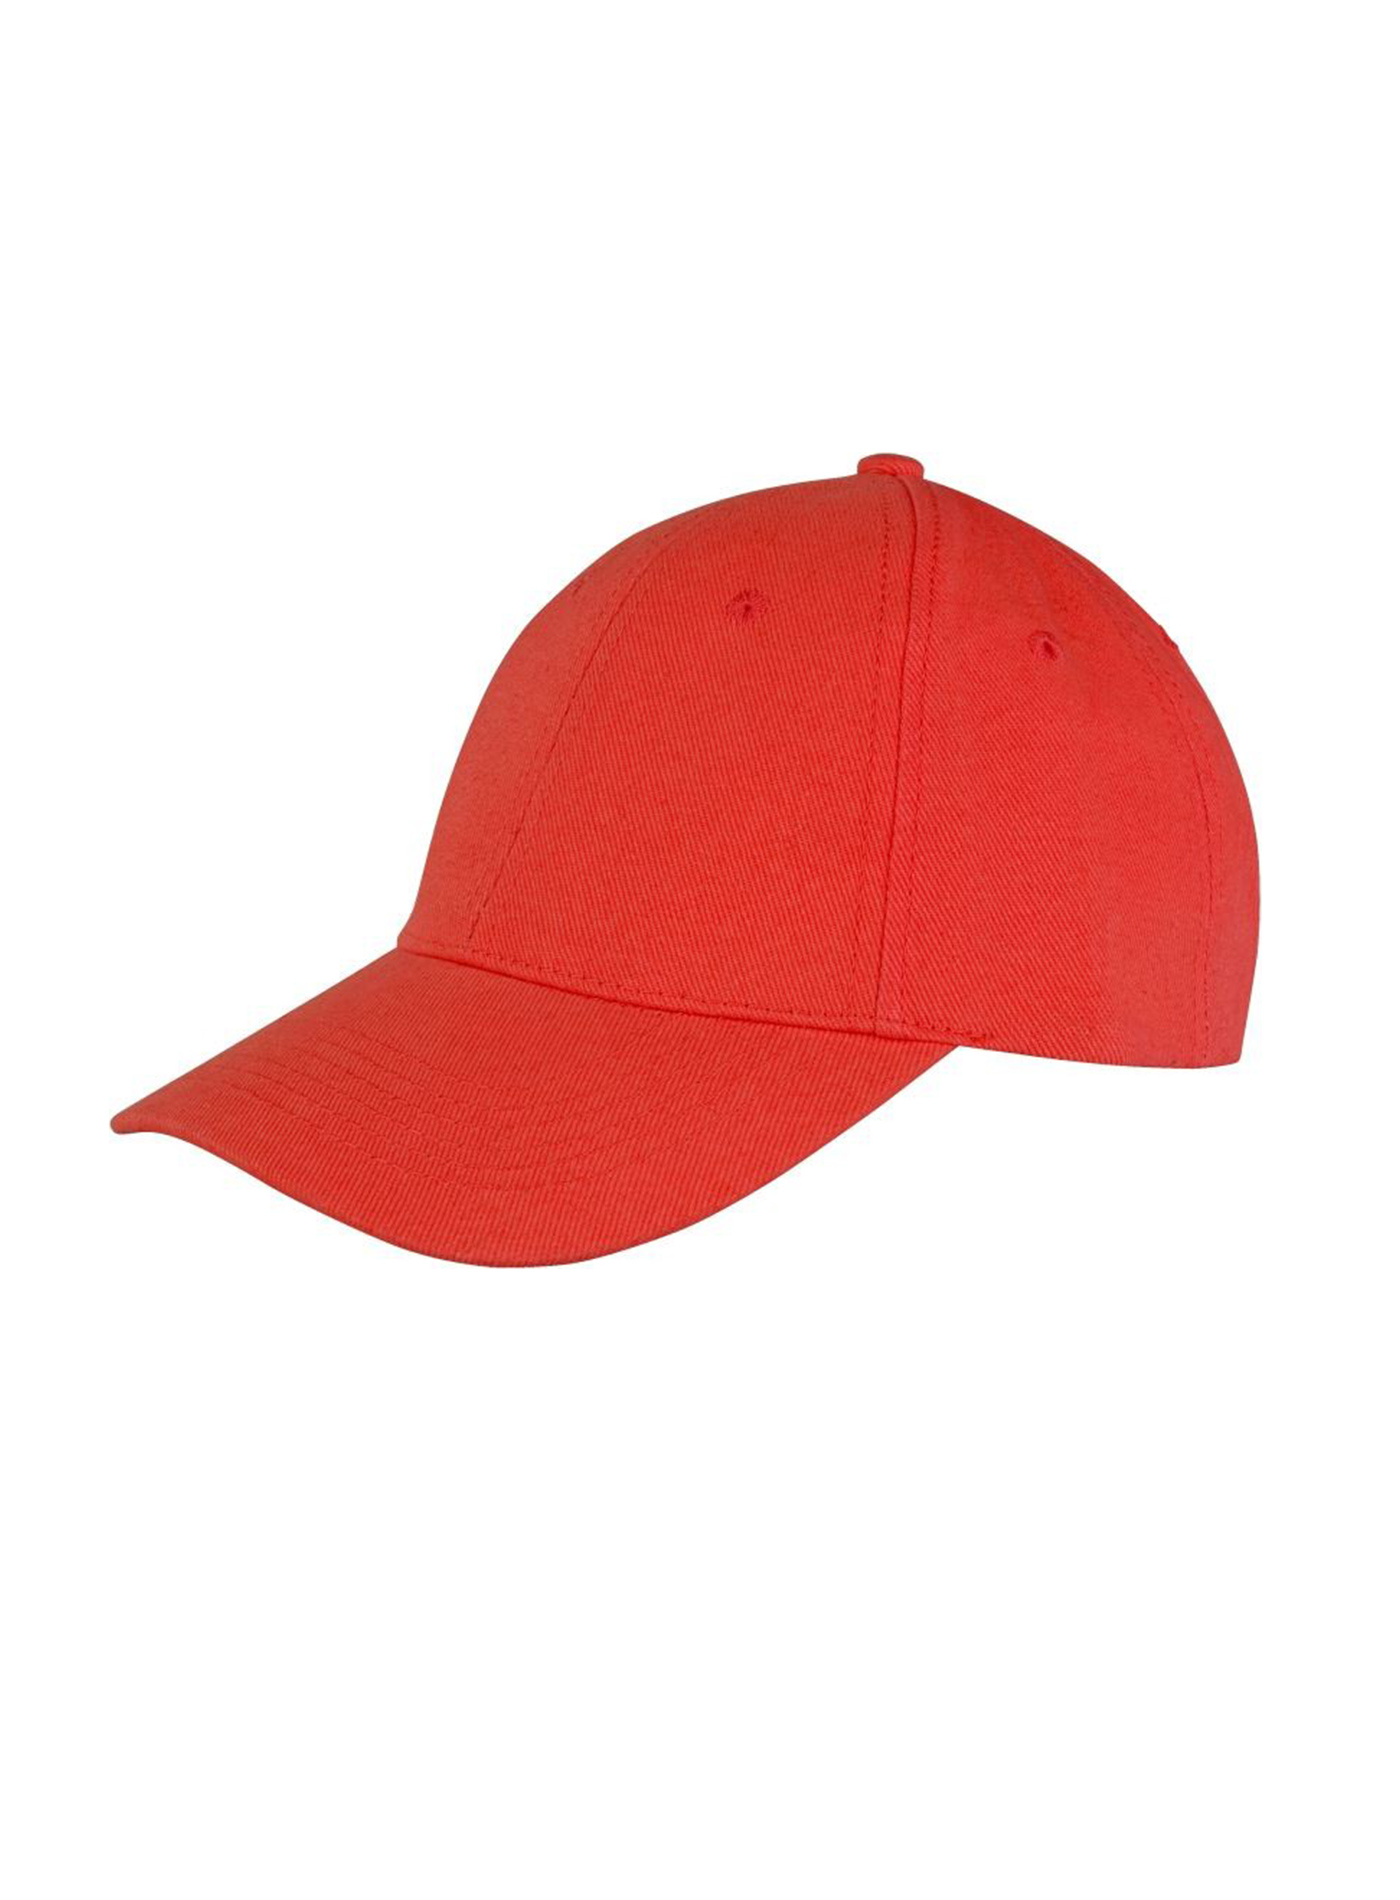 Kšiltovka Result headwear s nízkým profilem - Červená univerzal